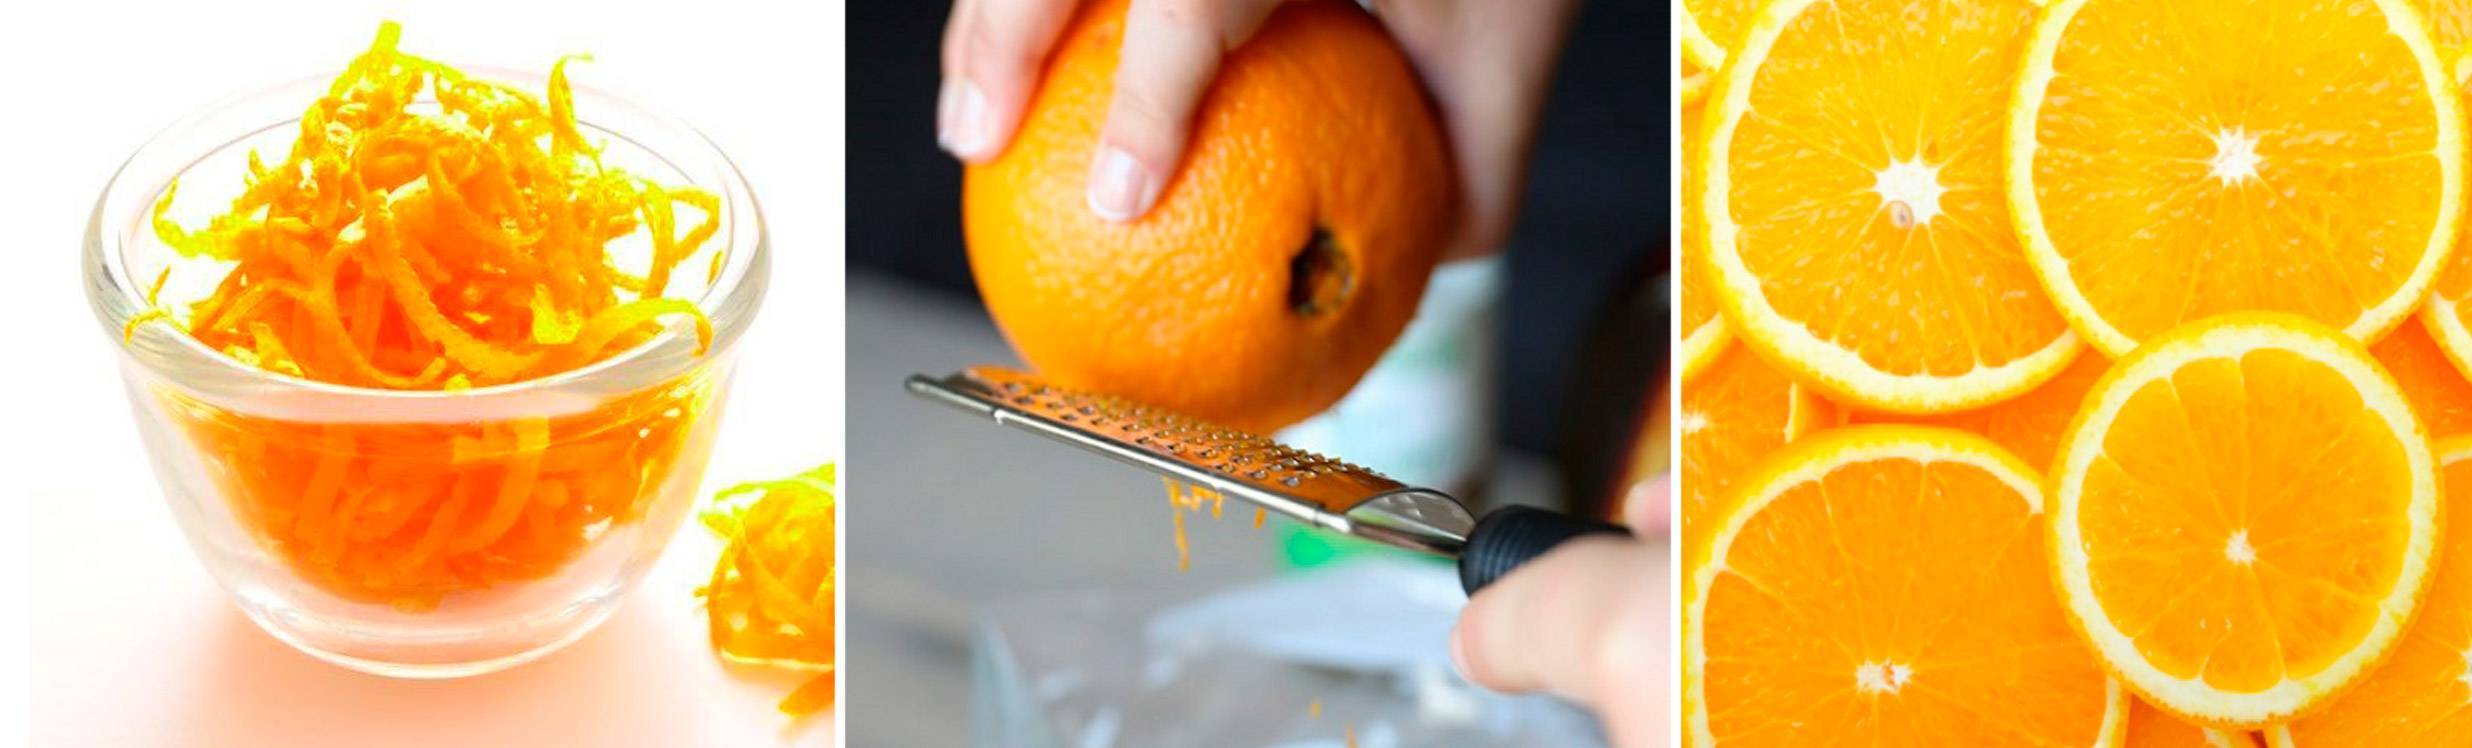 Цедра апельсина: польза и вред, как сделать в домашних условиях, рецепты